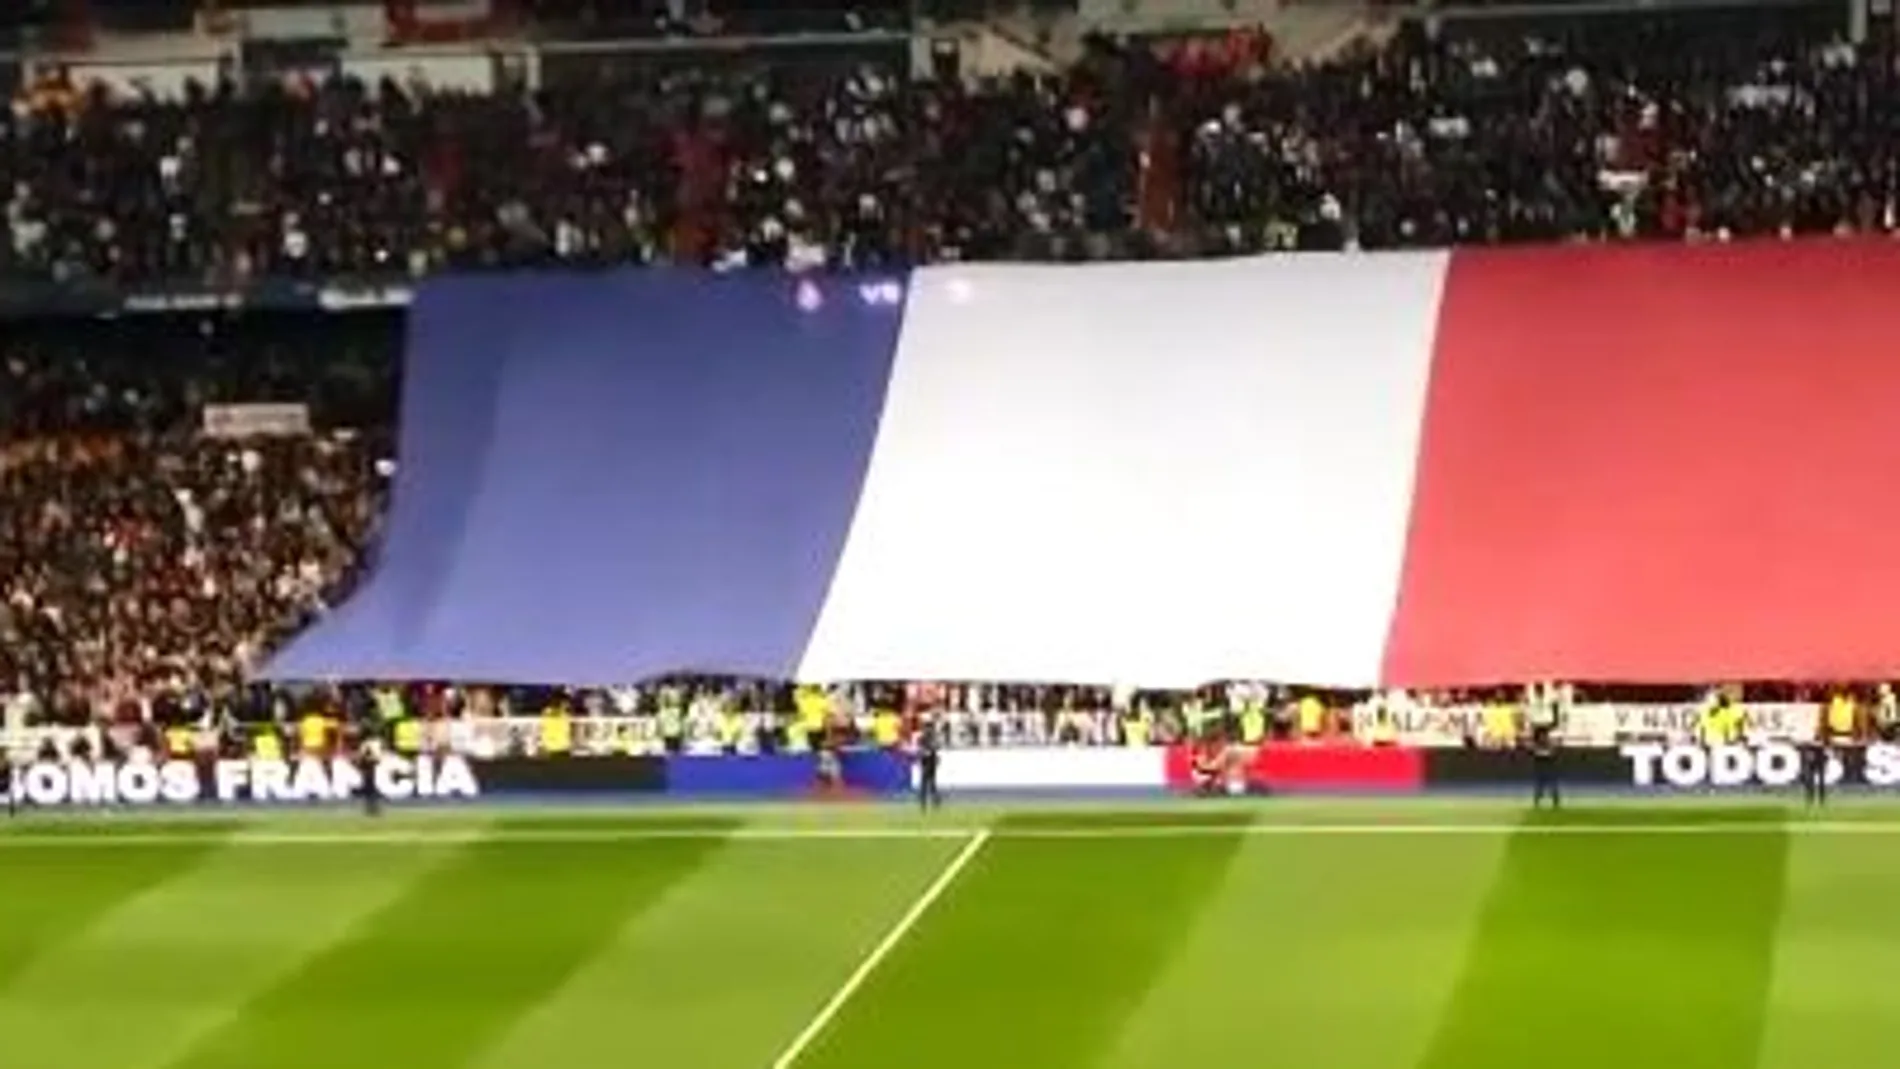 Los equipos honraron a las víctimas de los atentados de París antes del arranque del partido